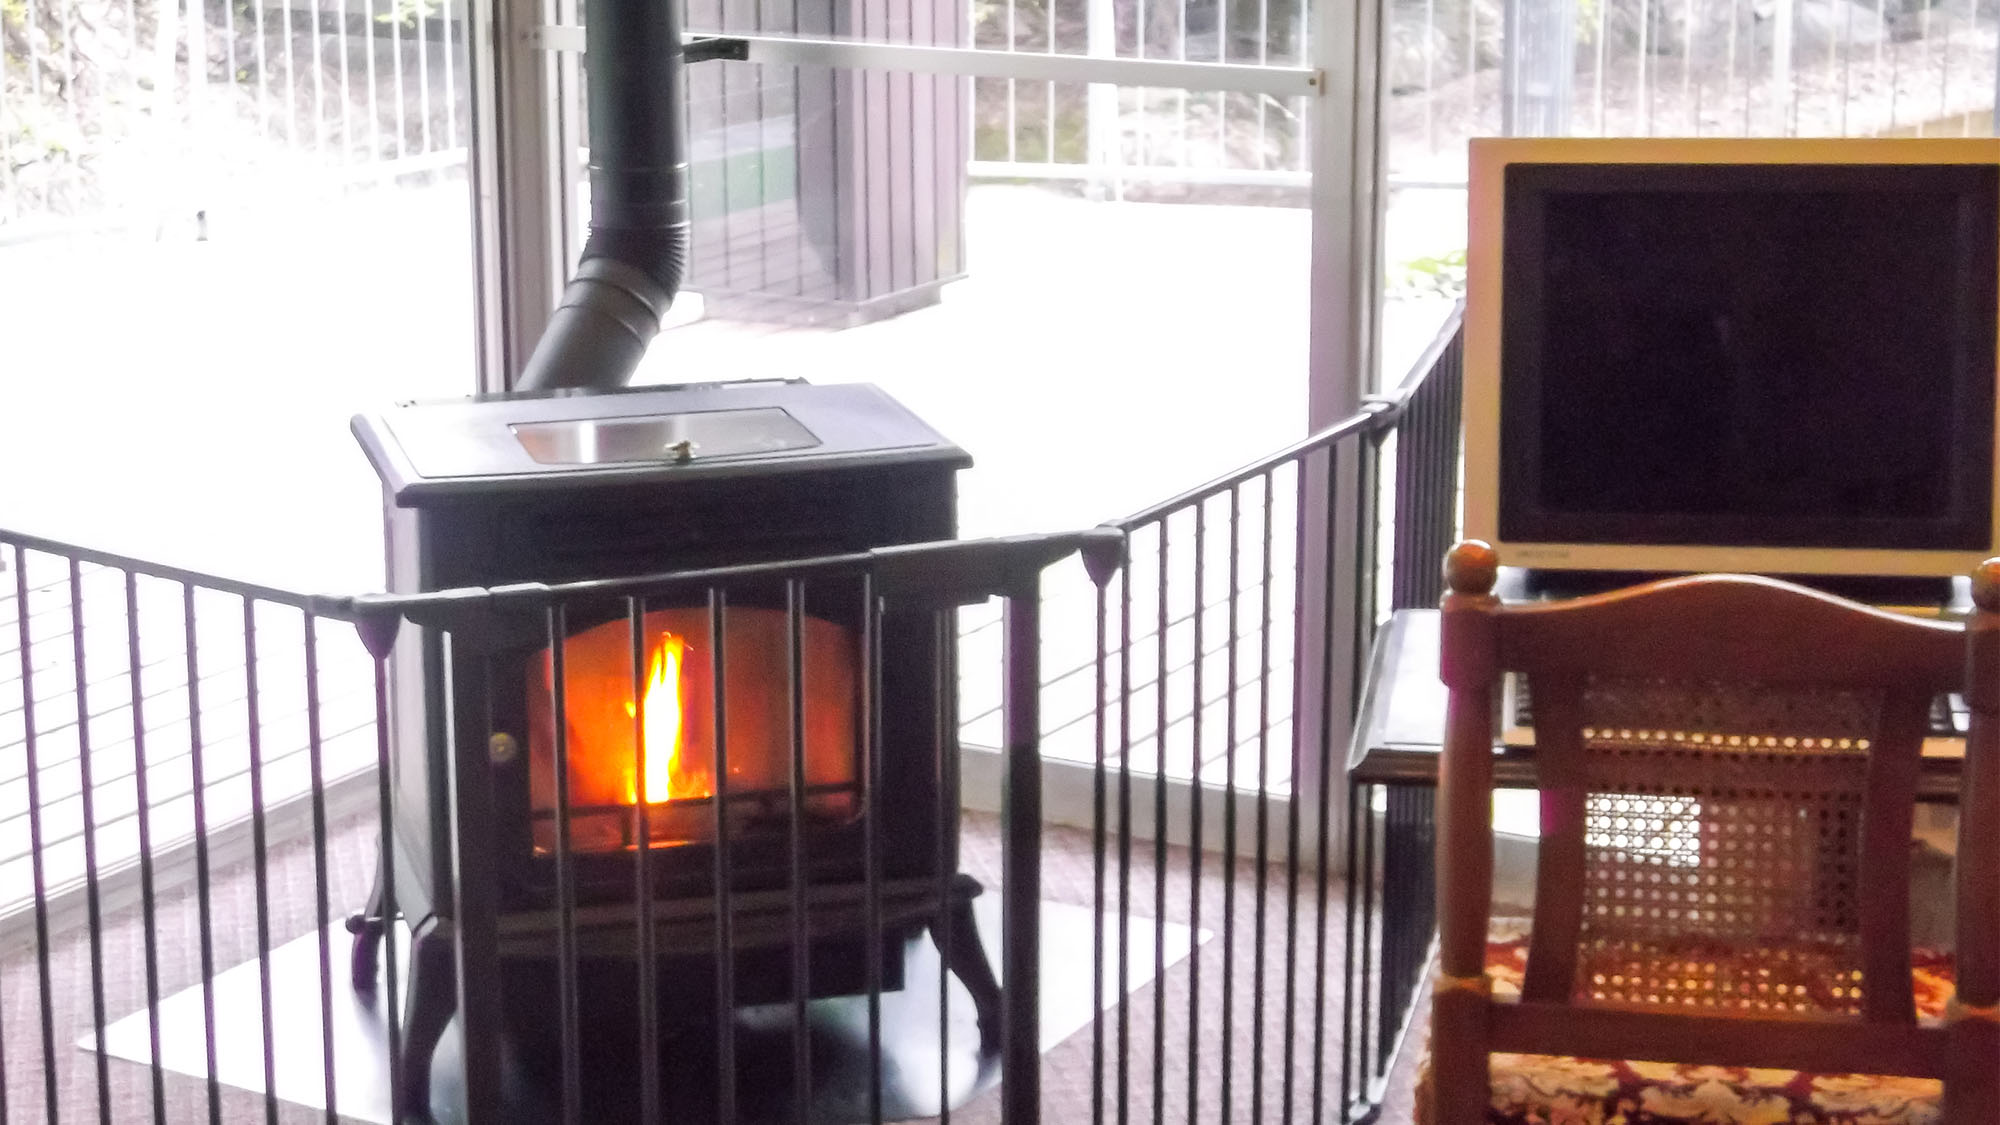 ・【ロビー】冬は暖炉でホカホカに暖まります